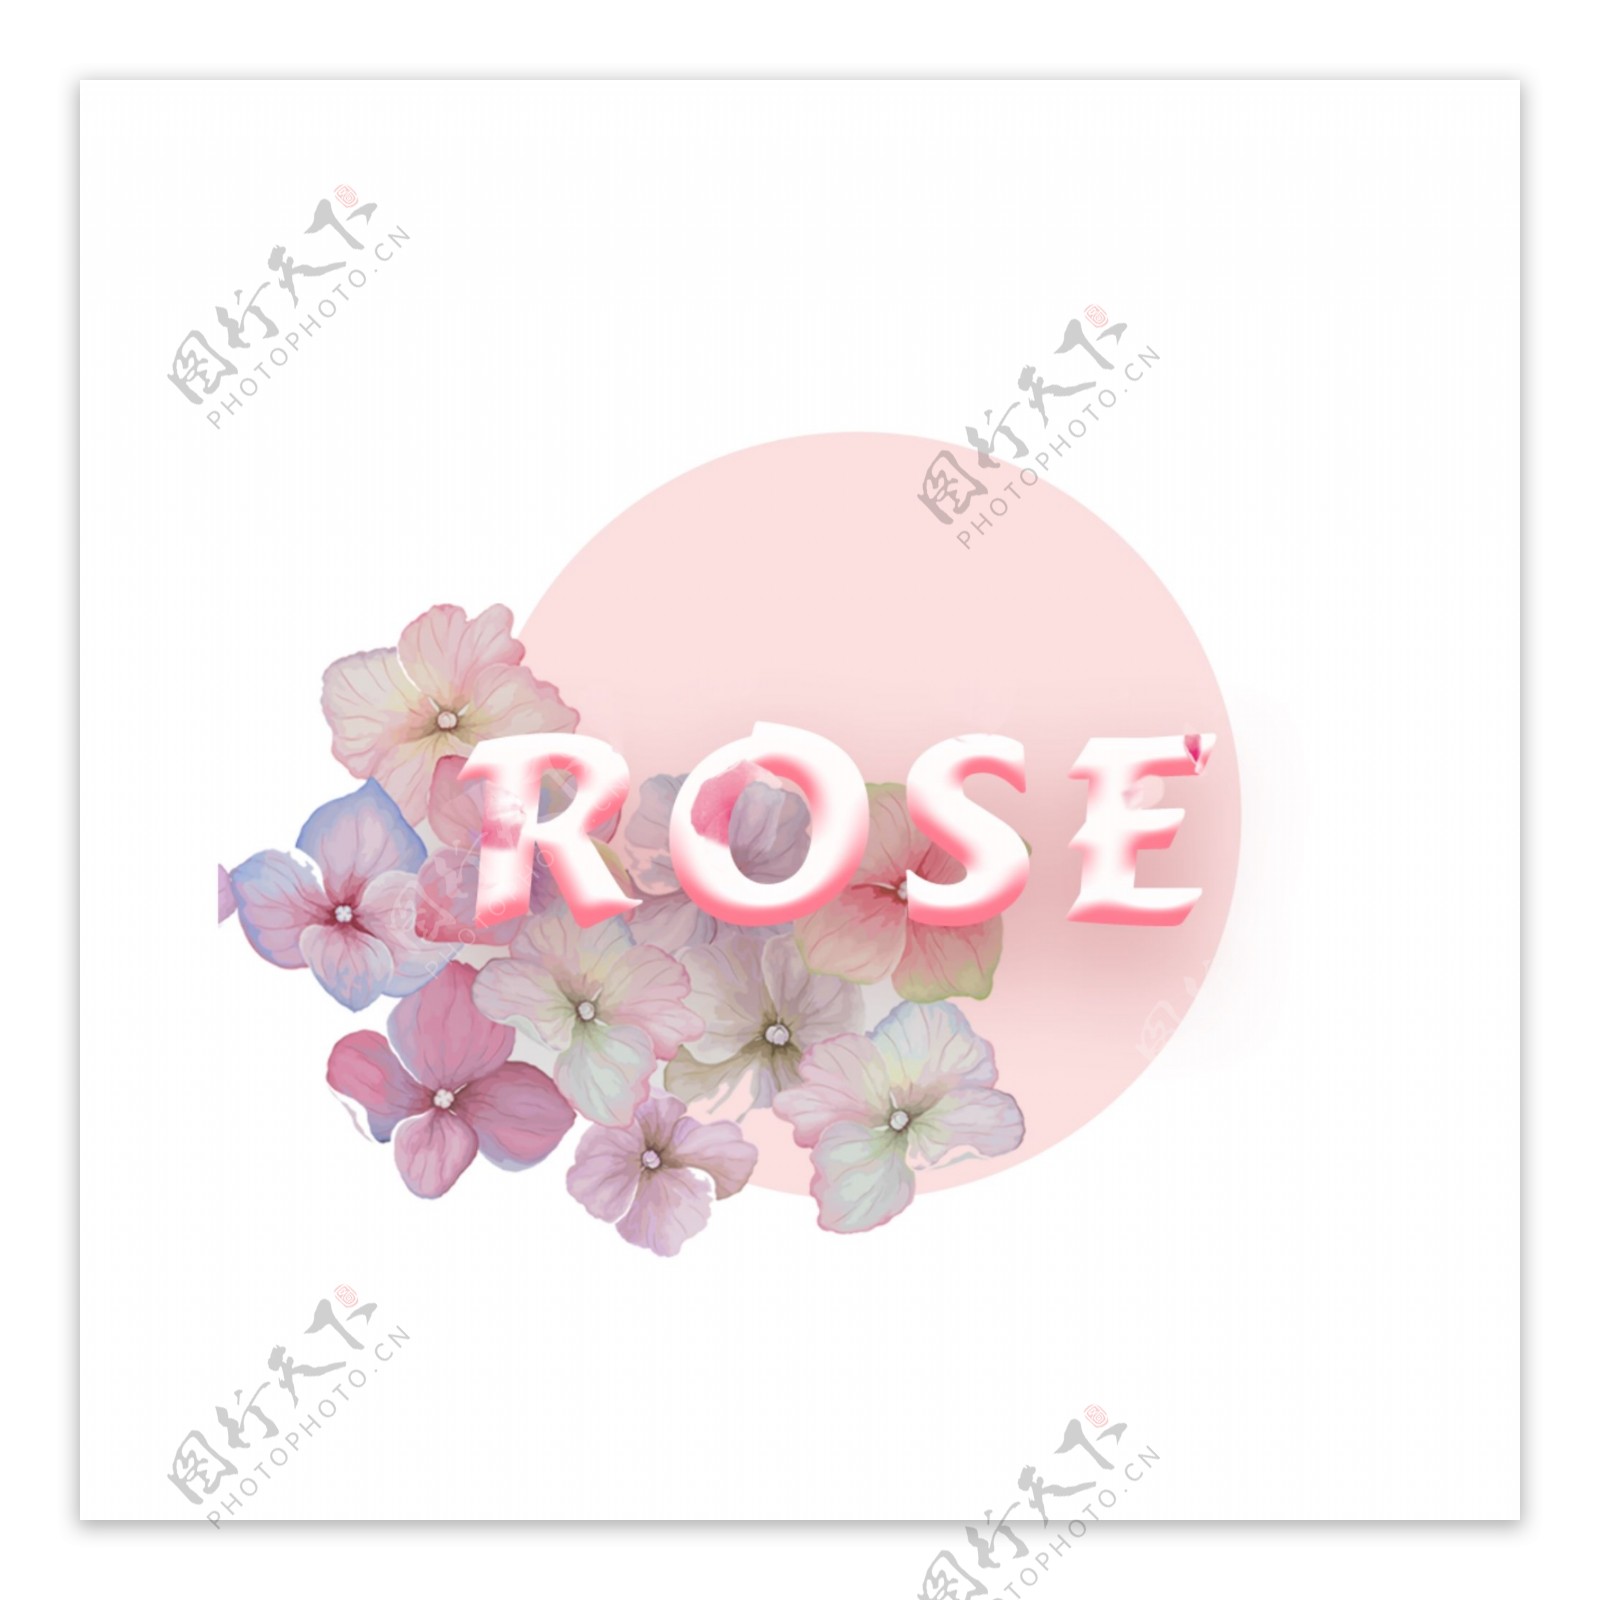 美丽的花和粉红色圆圈图案与玫瑰字体